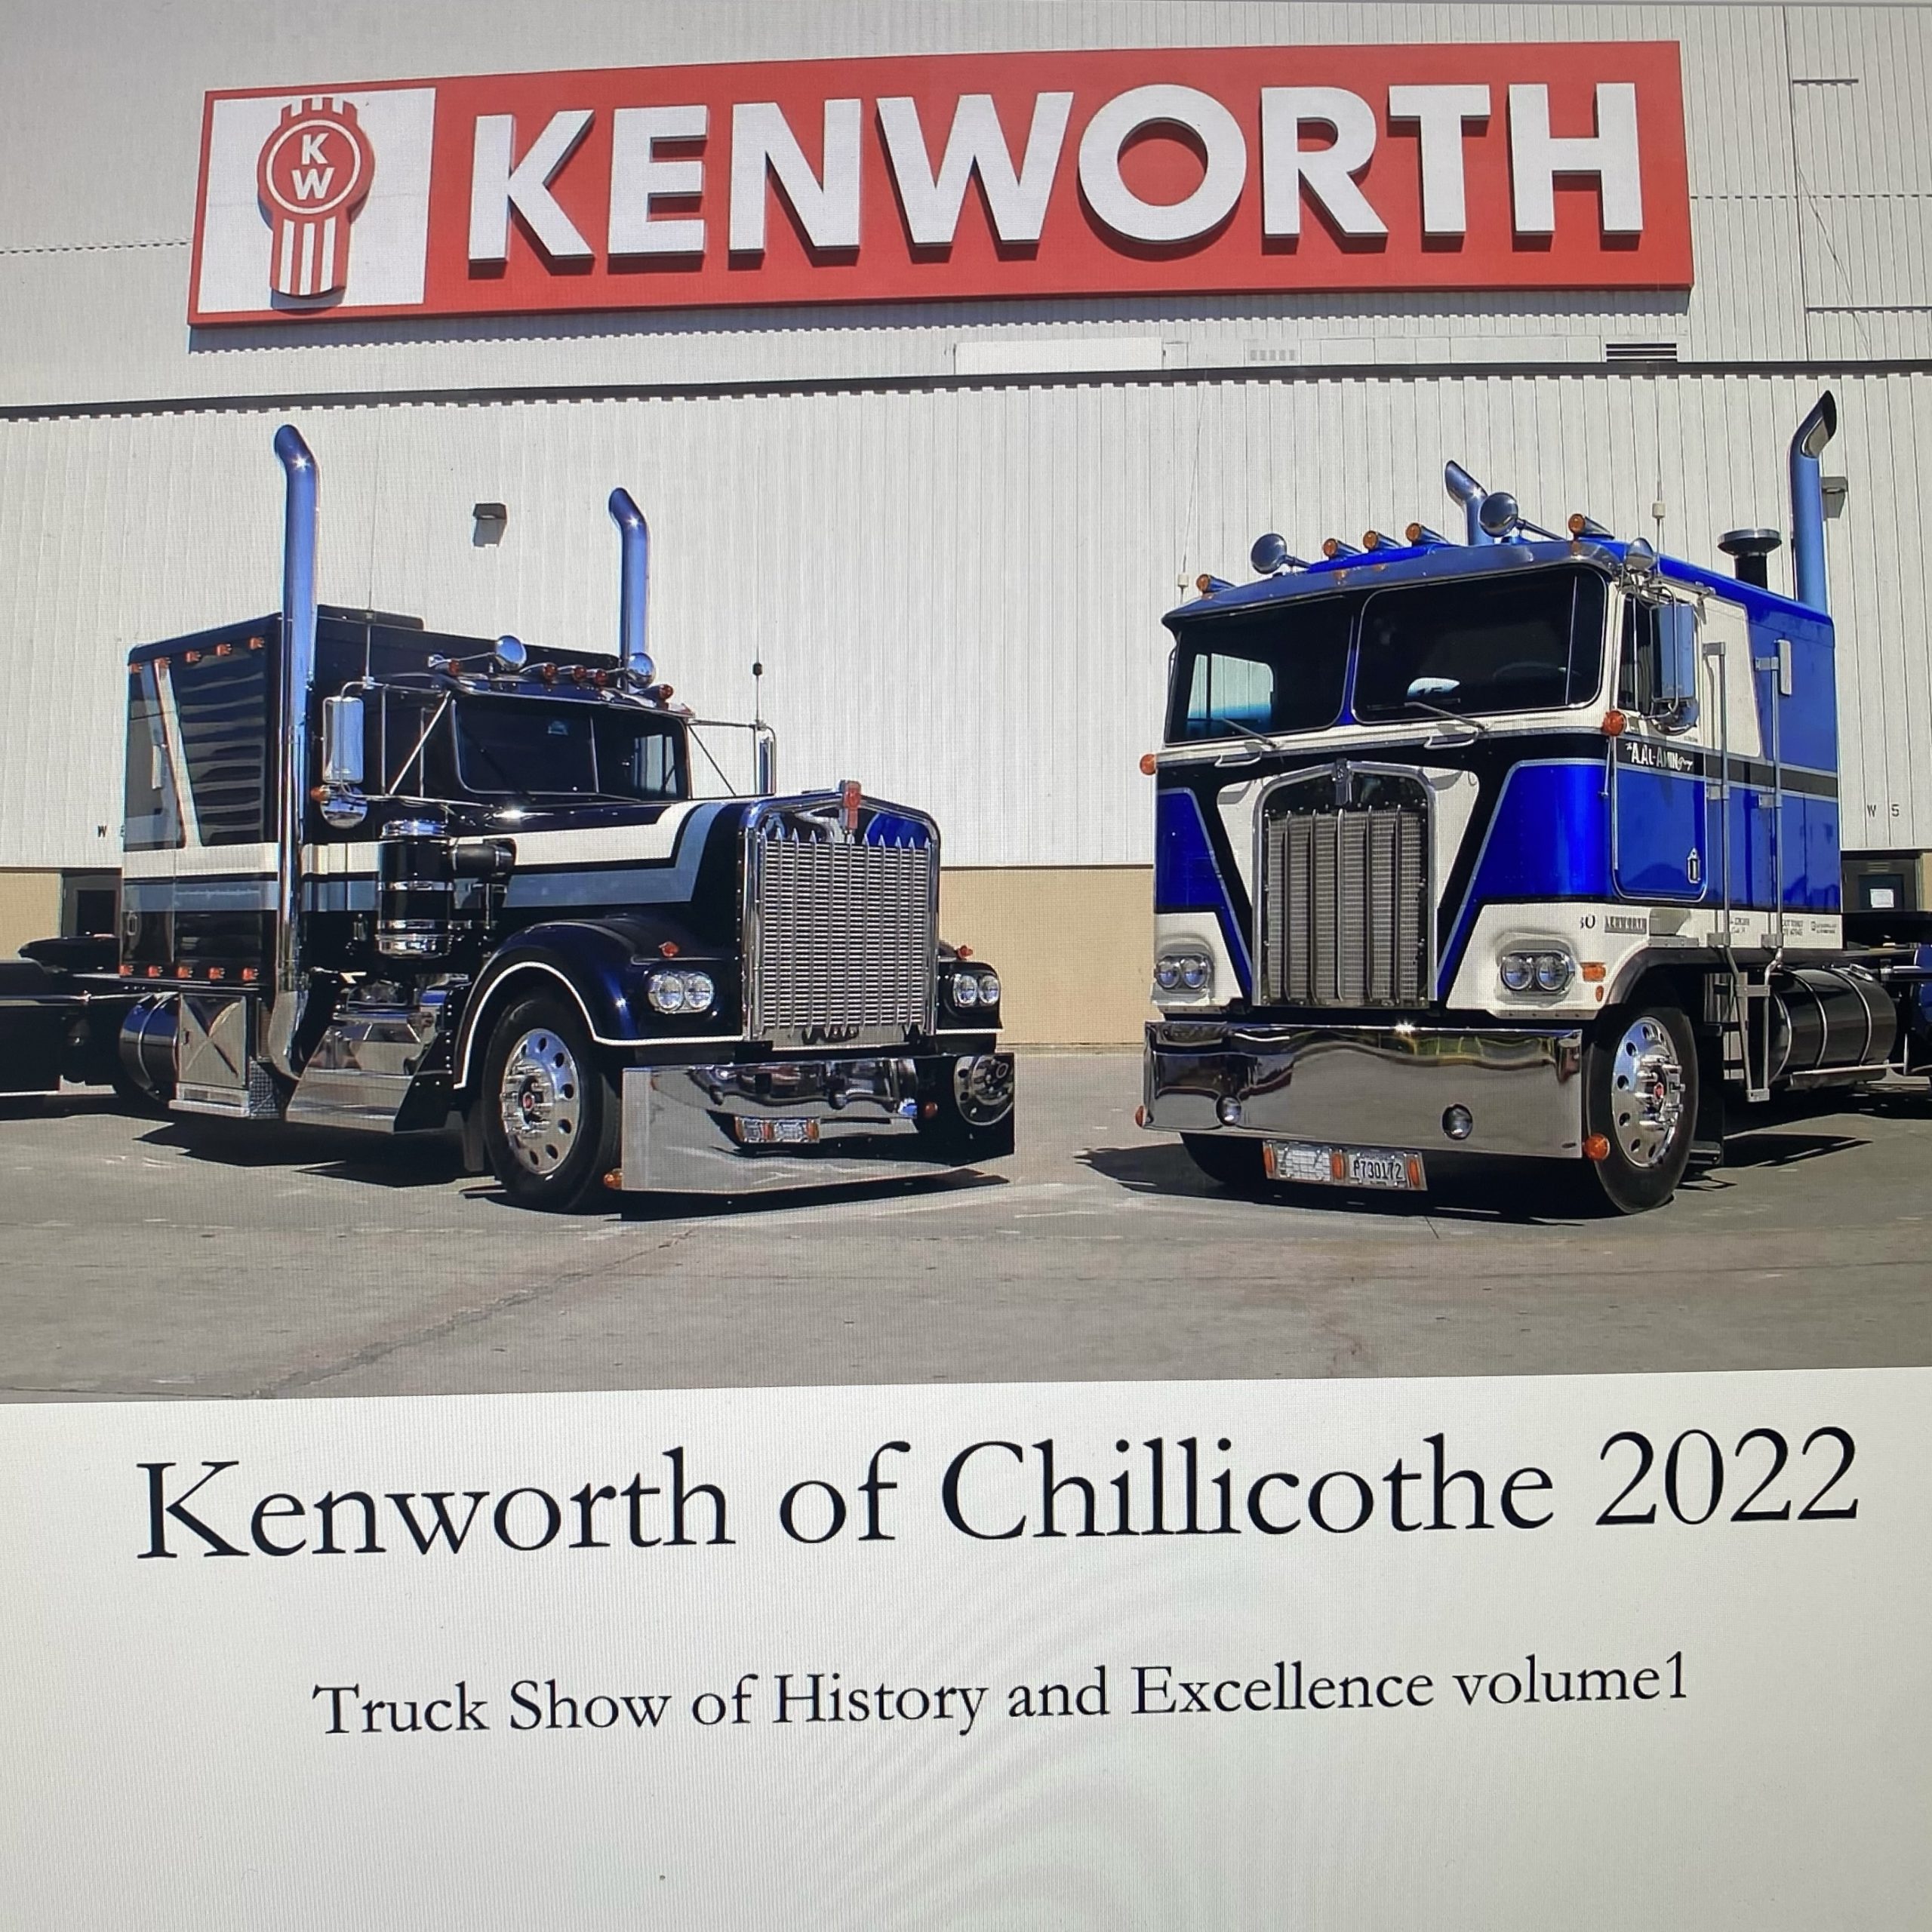 2022 Kenworth Chillicothe, Ohio Truck Show Commemorative Book